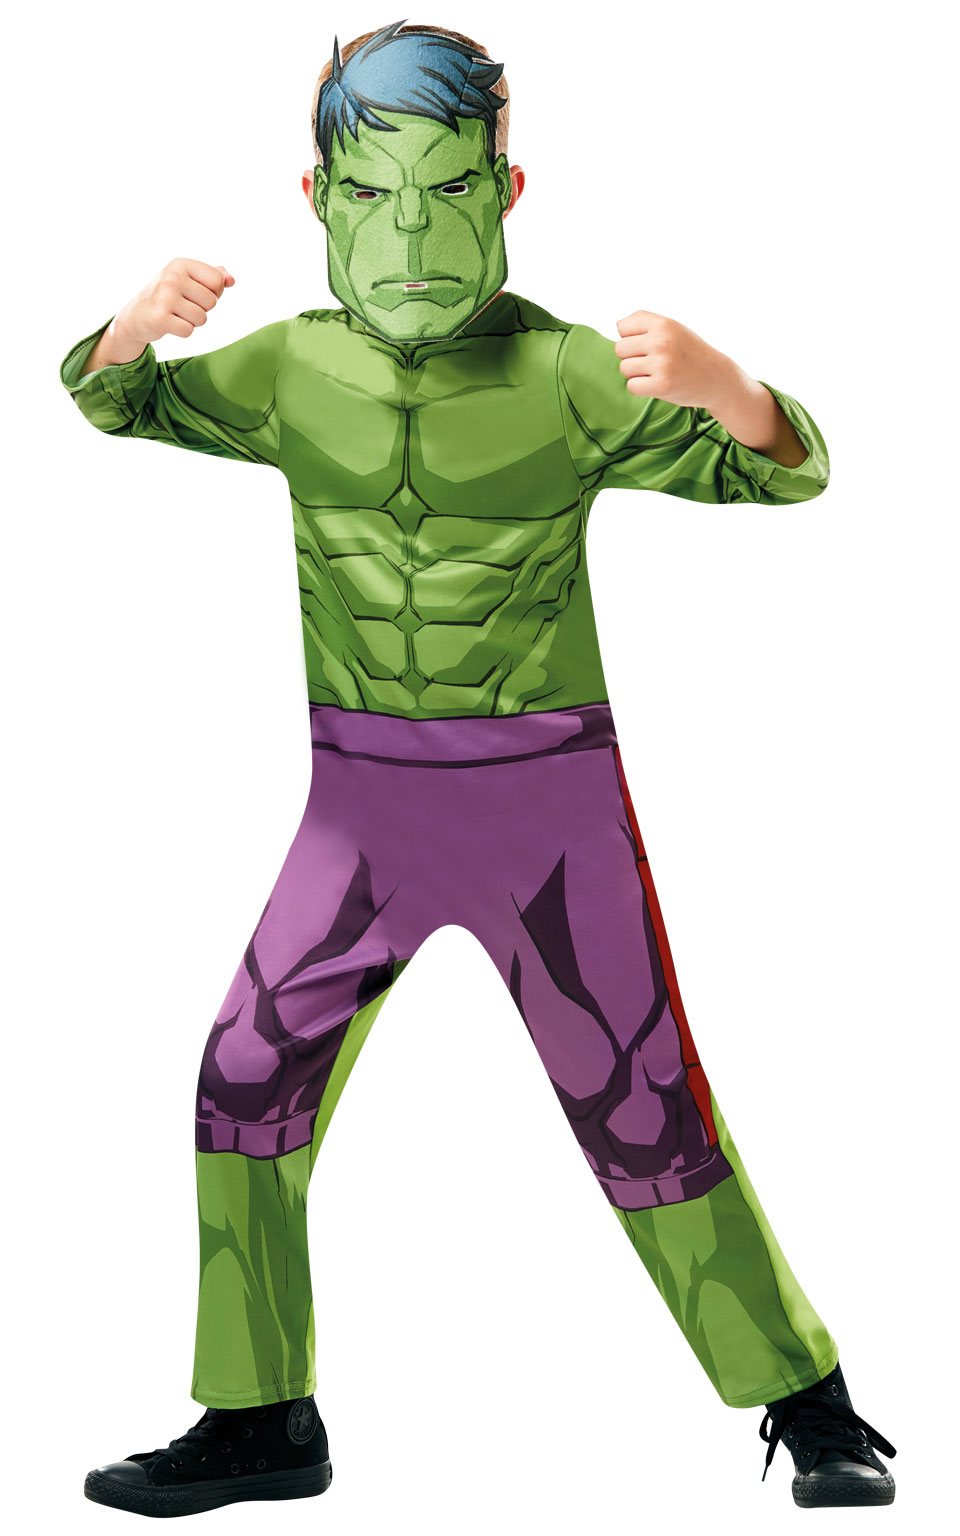 Rubies Detský kostým Hulk Veľkosť - deti: M